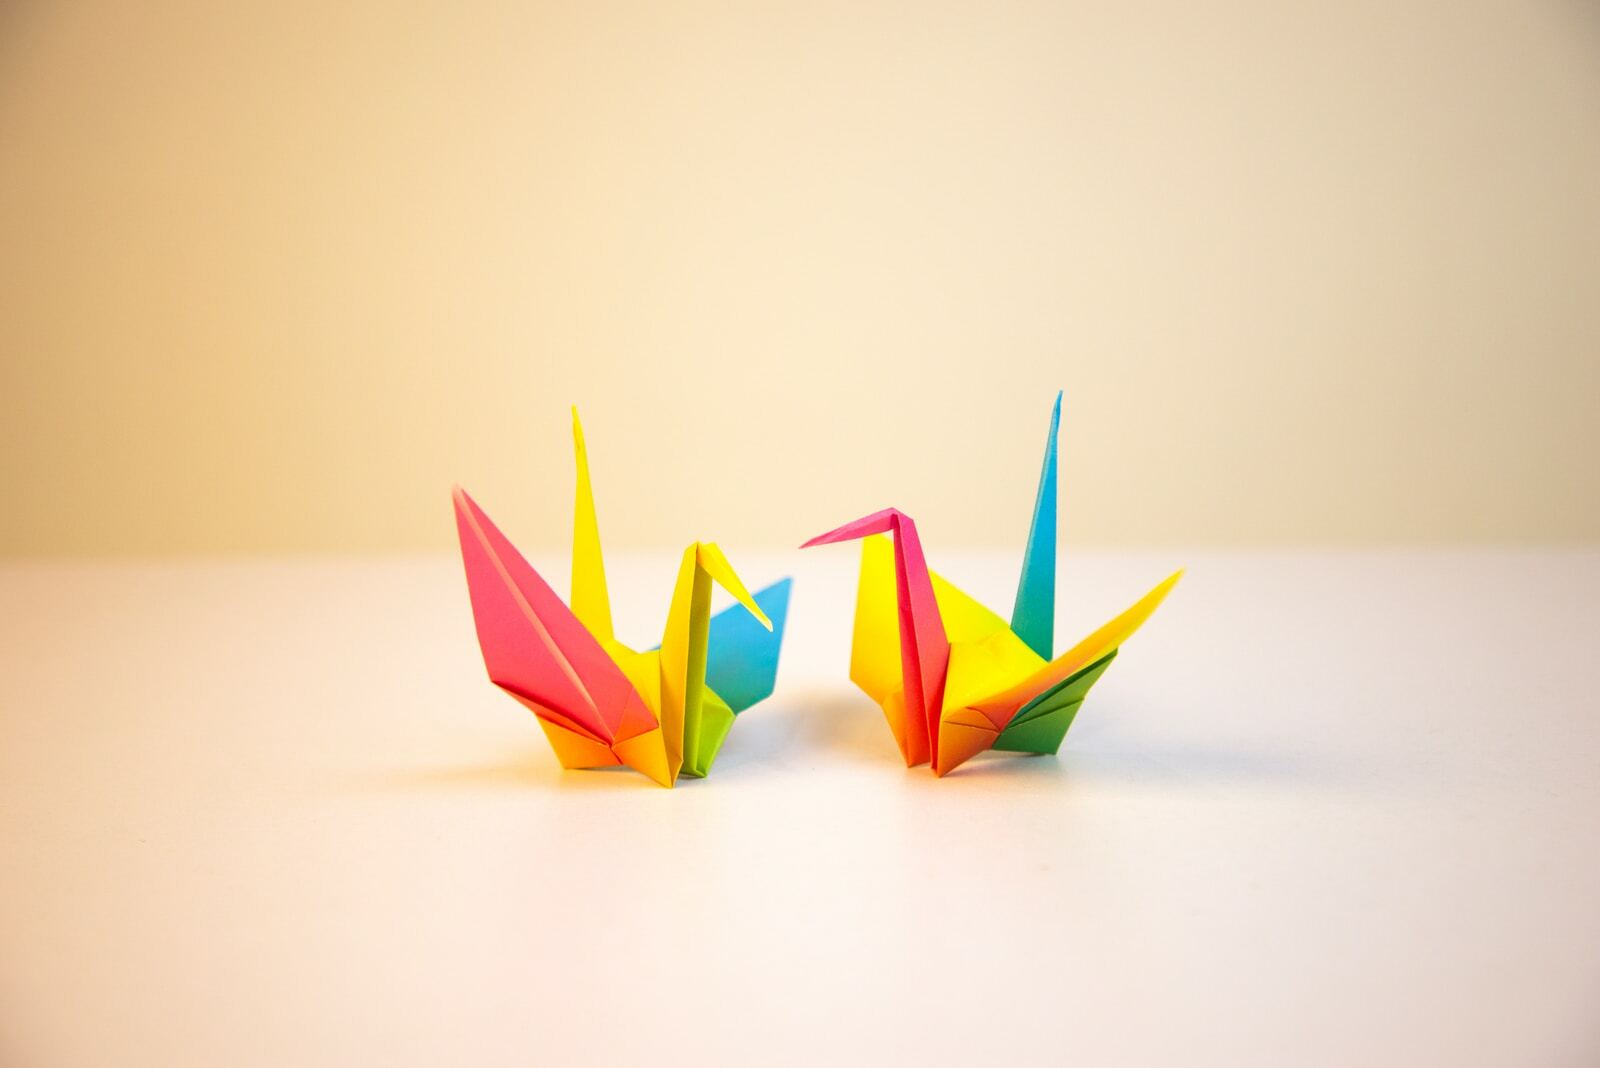 Origami Kağıdı Çeşitleri